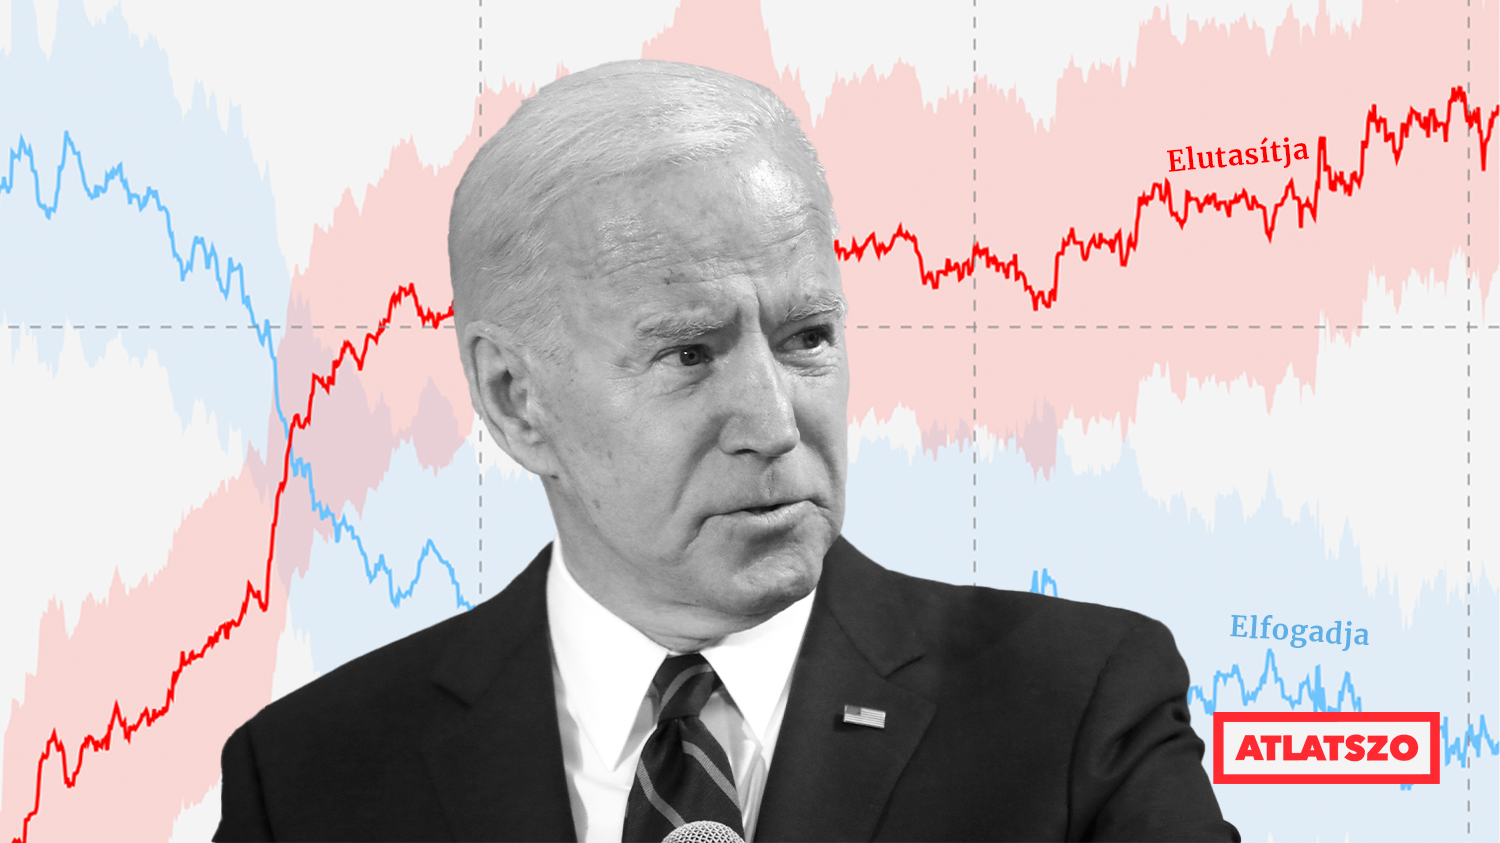 Joe Biden tartósan az elmúlt 70 év legnépszerűtlenebb amerikai elnöke | atlatszo.hu